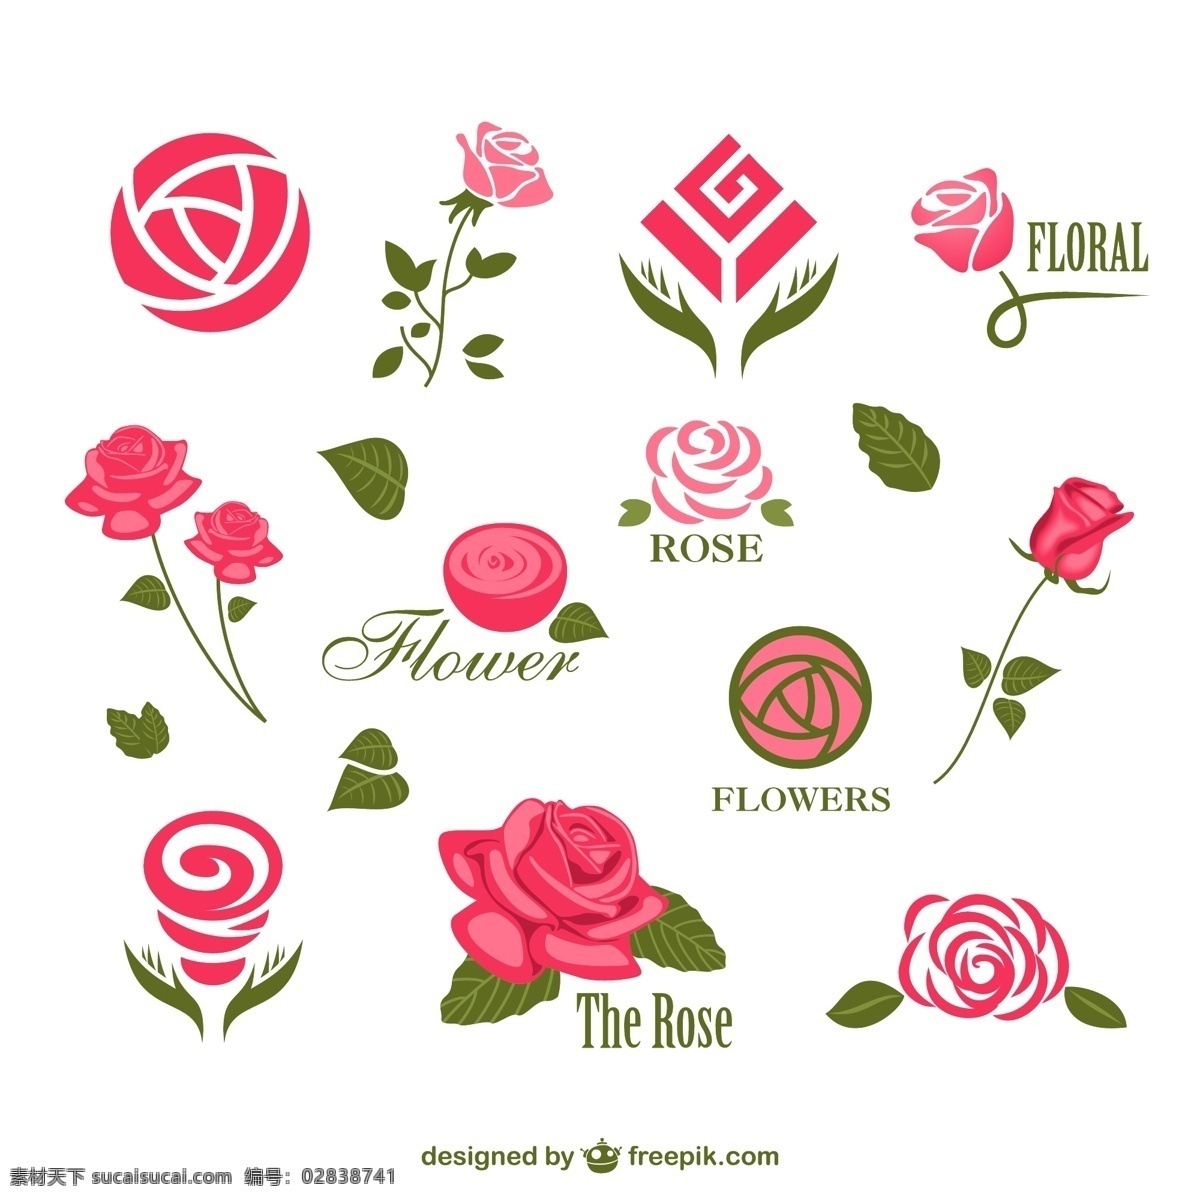 摘要玫瑰标志 标志 花卉 标志设计 玫瑰 粉红色 标识 图形 平面设计 元素 图案 装饰 插图 设计元素 花卉饰品 白色